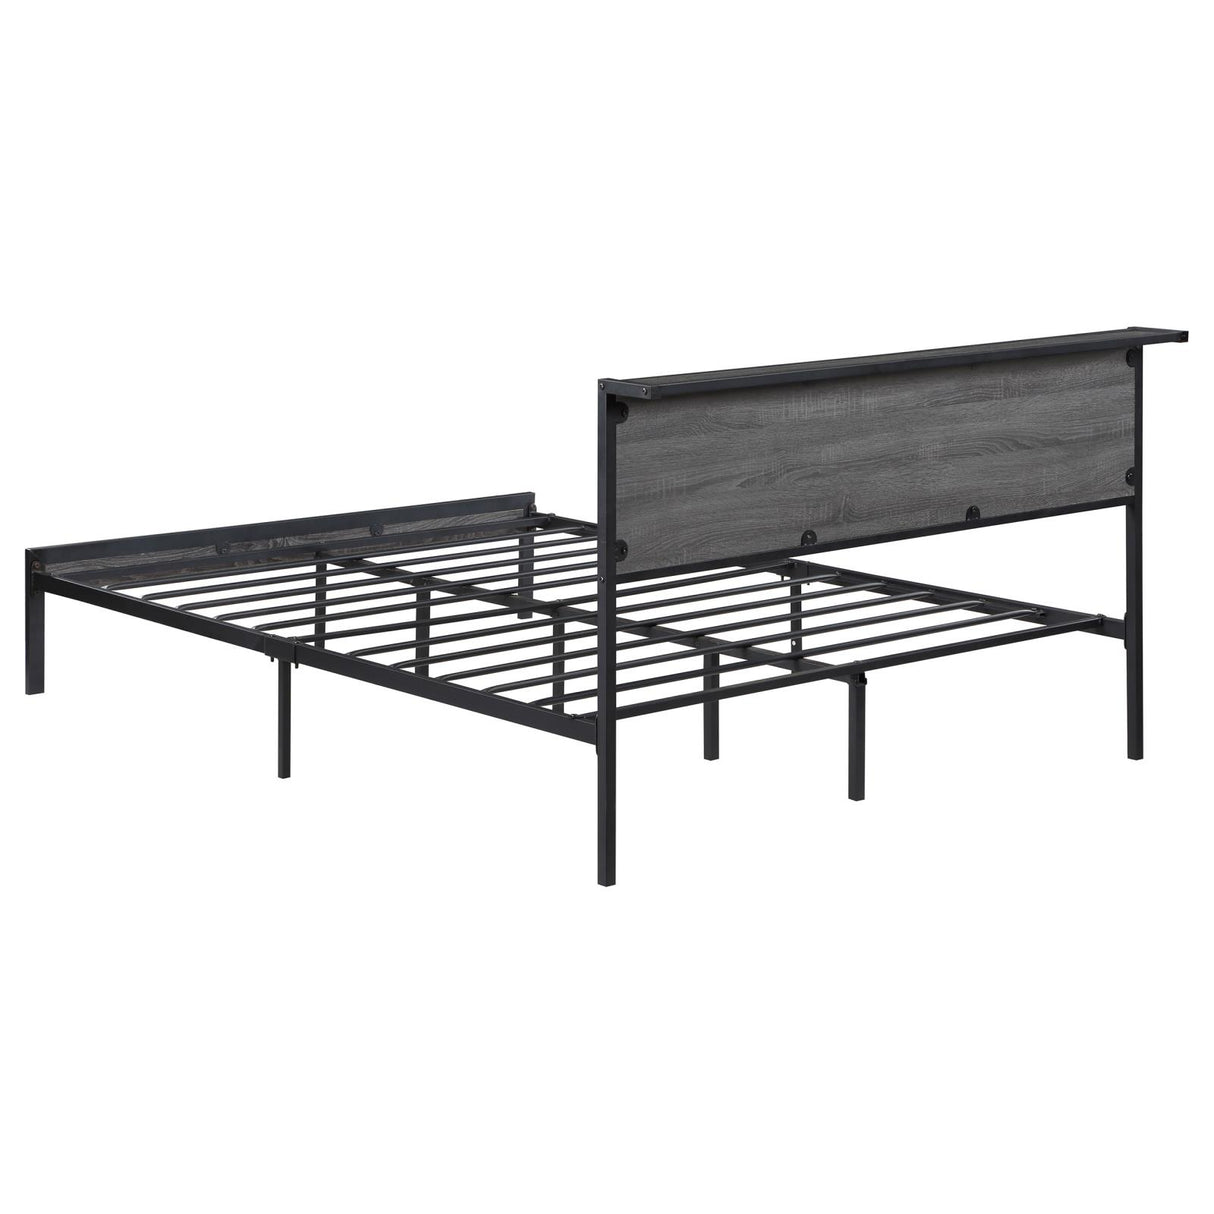 Ricky Full Platform Bed Grey and Black - 302143F - Luna Furniture